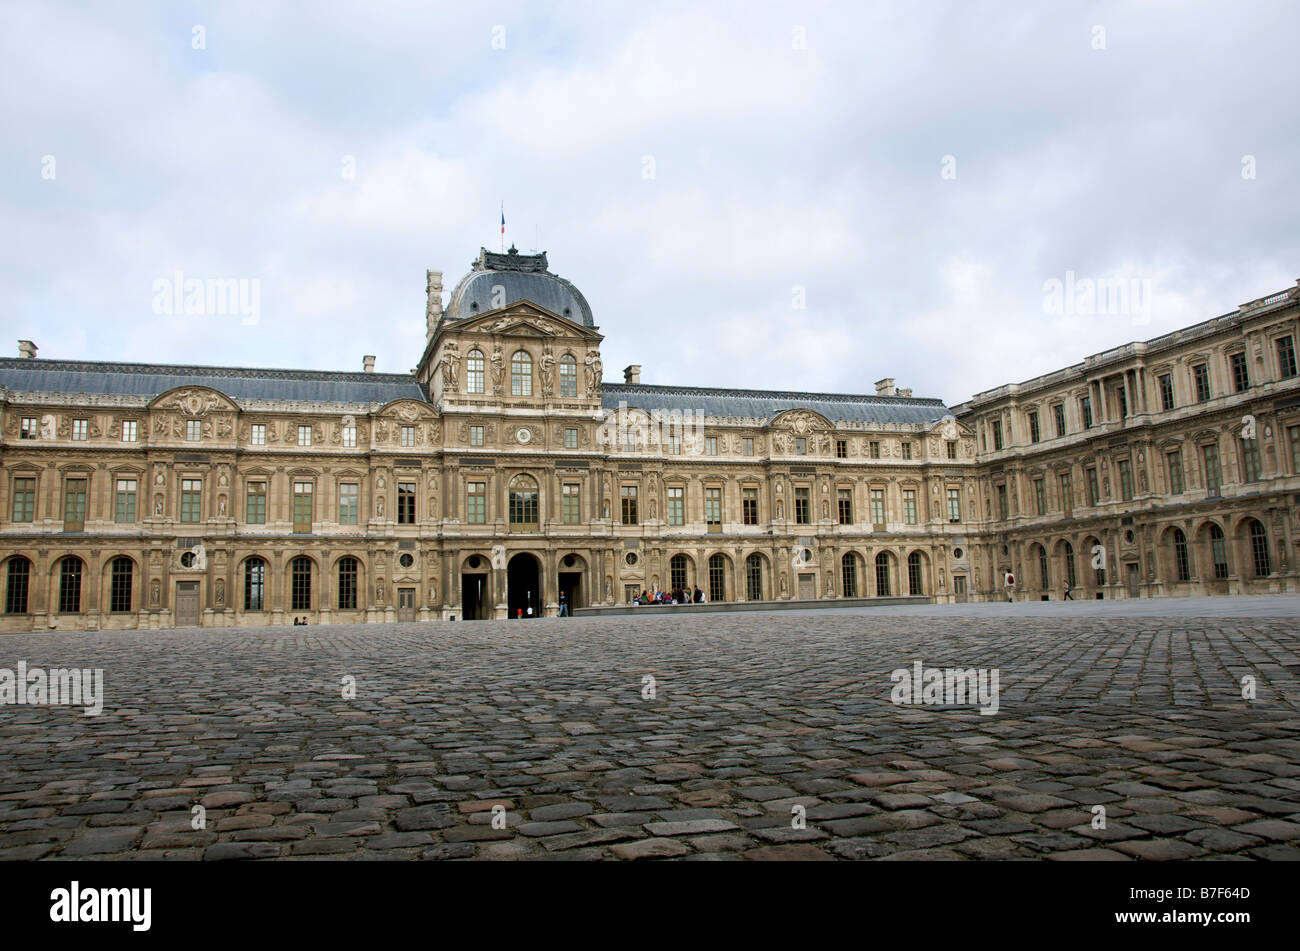 Parigi. La Cour Carree (cortile quadrato) del Palazzo del Louvre. Ile de france. Francia Foto Stock